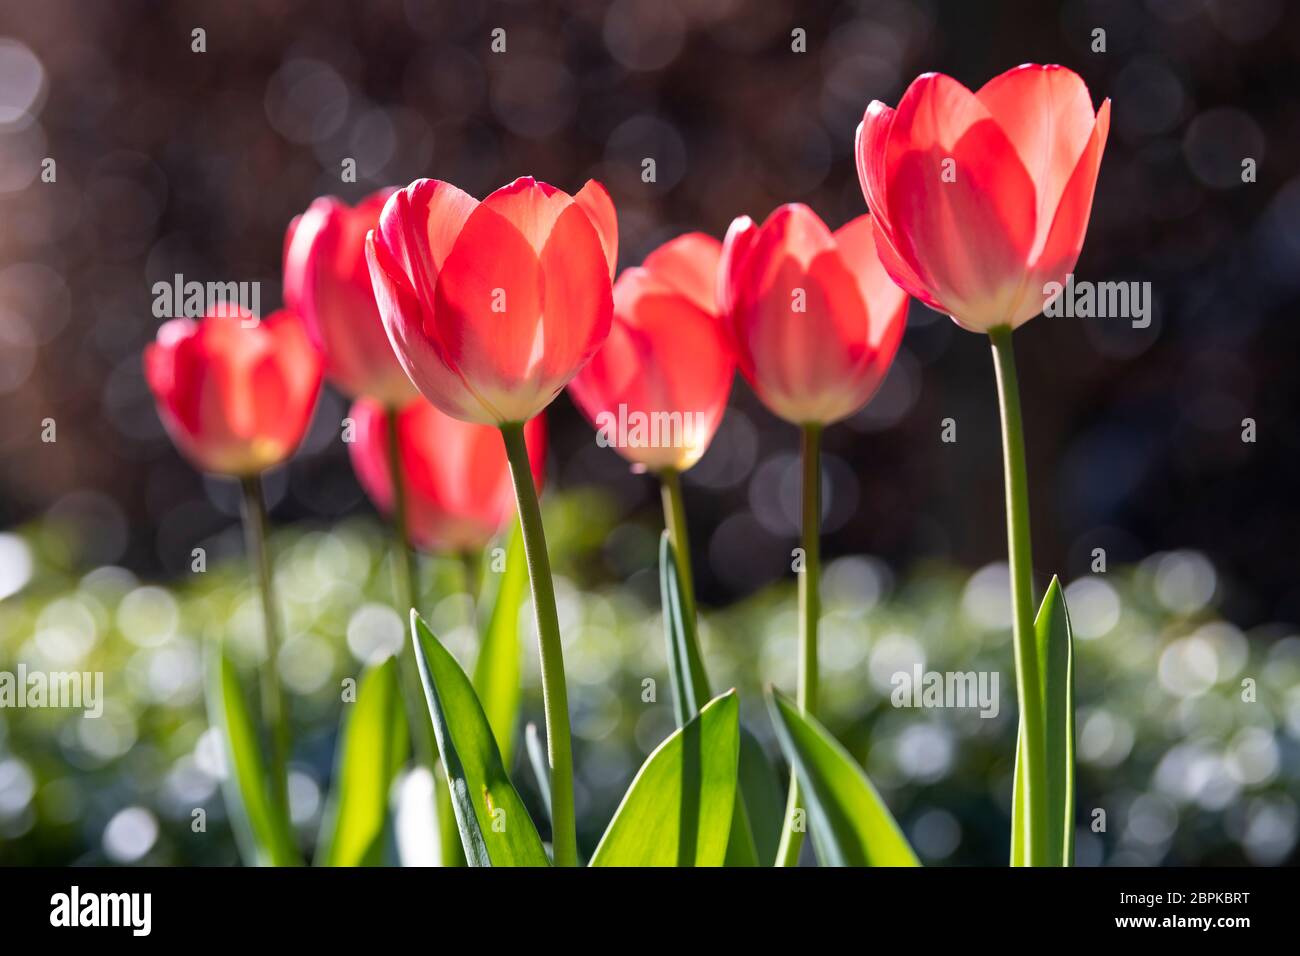 Tulipes rouges avec bokeh de gouttes sur les feuilles vertes Banque D'Images